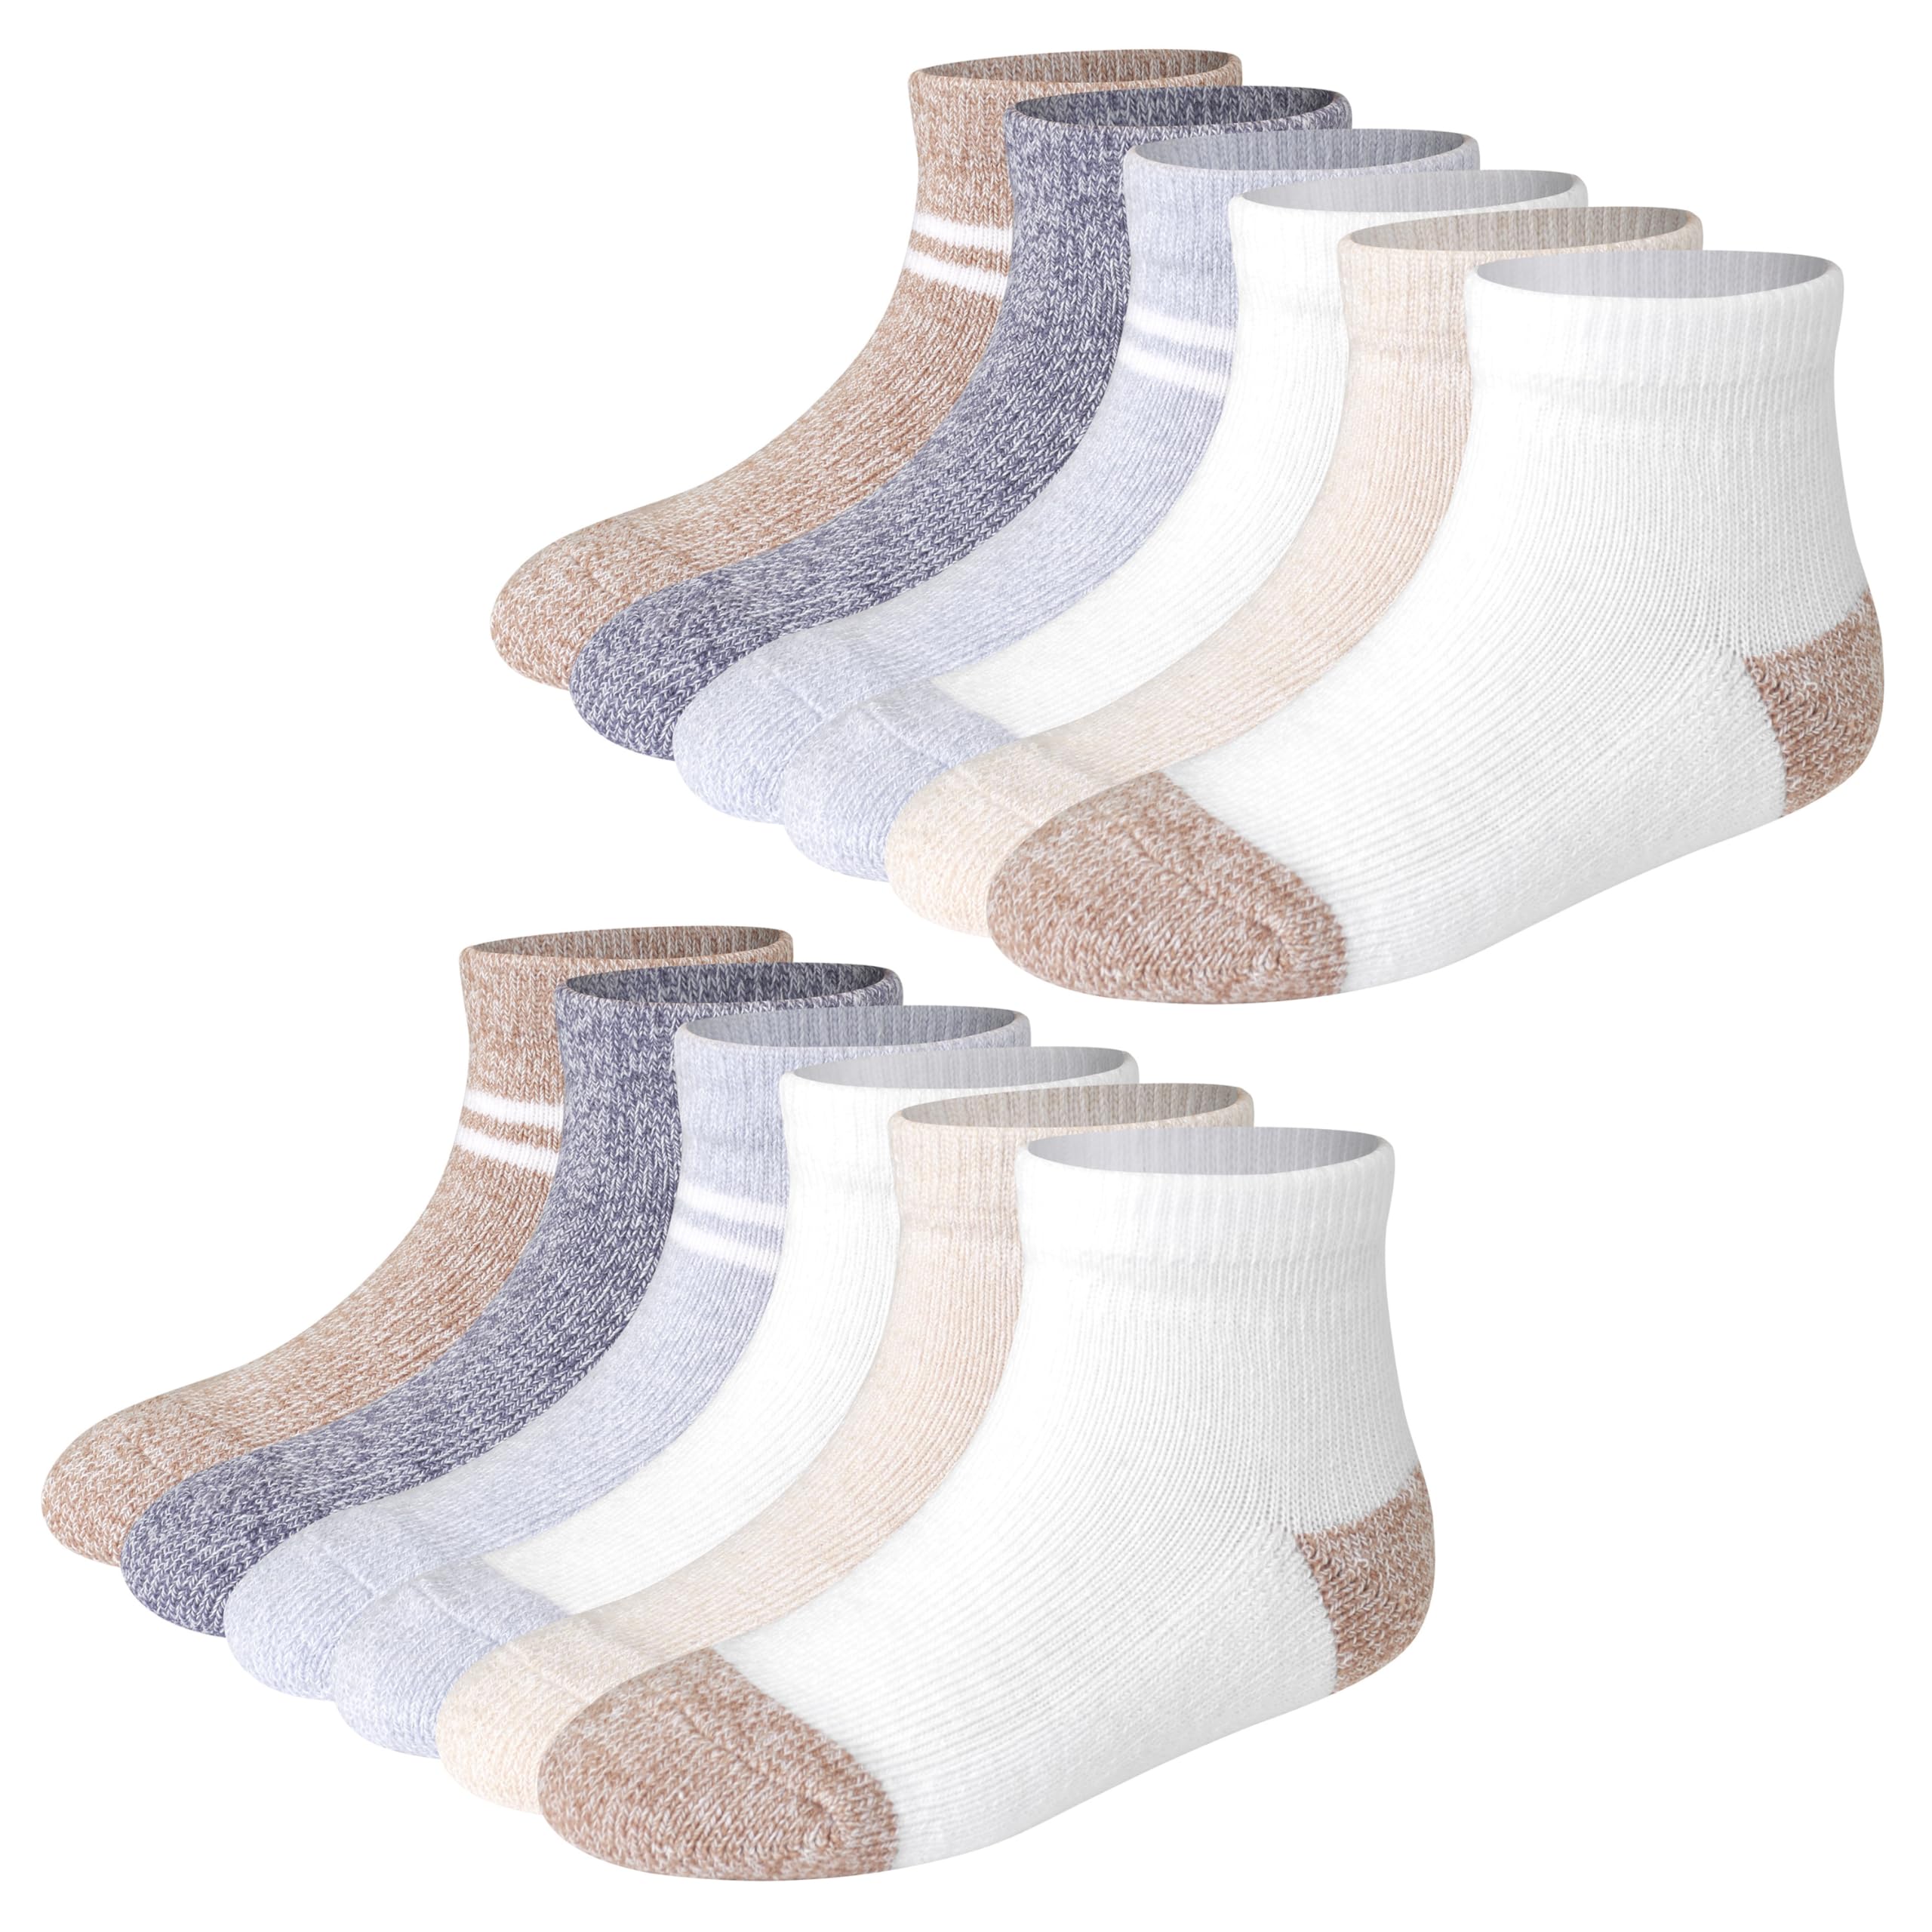 Hanes Baby and Toddler Socks, Non-Slip Grip Ankle Socks, Boys' and Girls', Multipacks